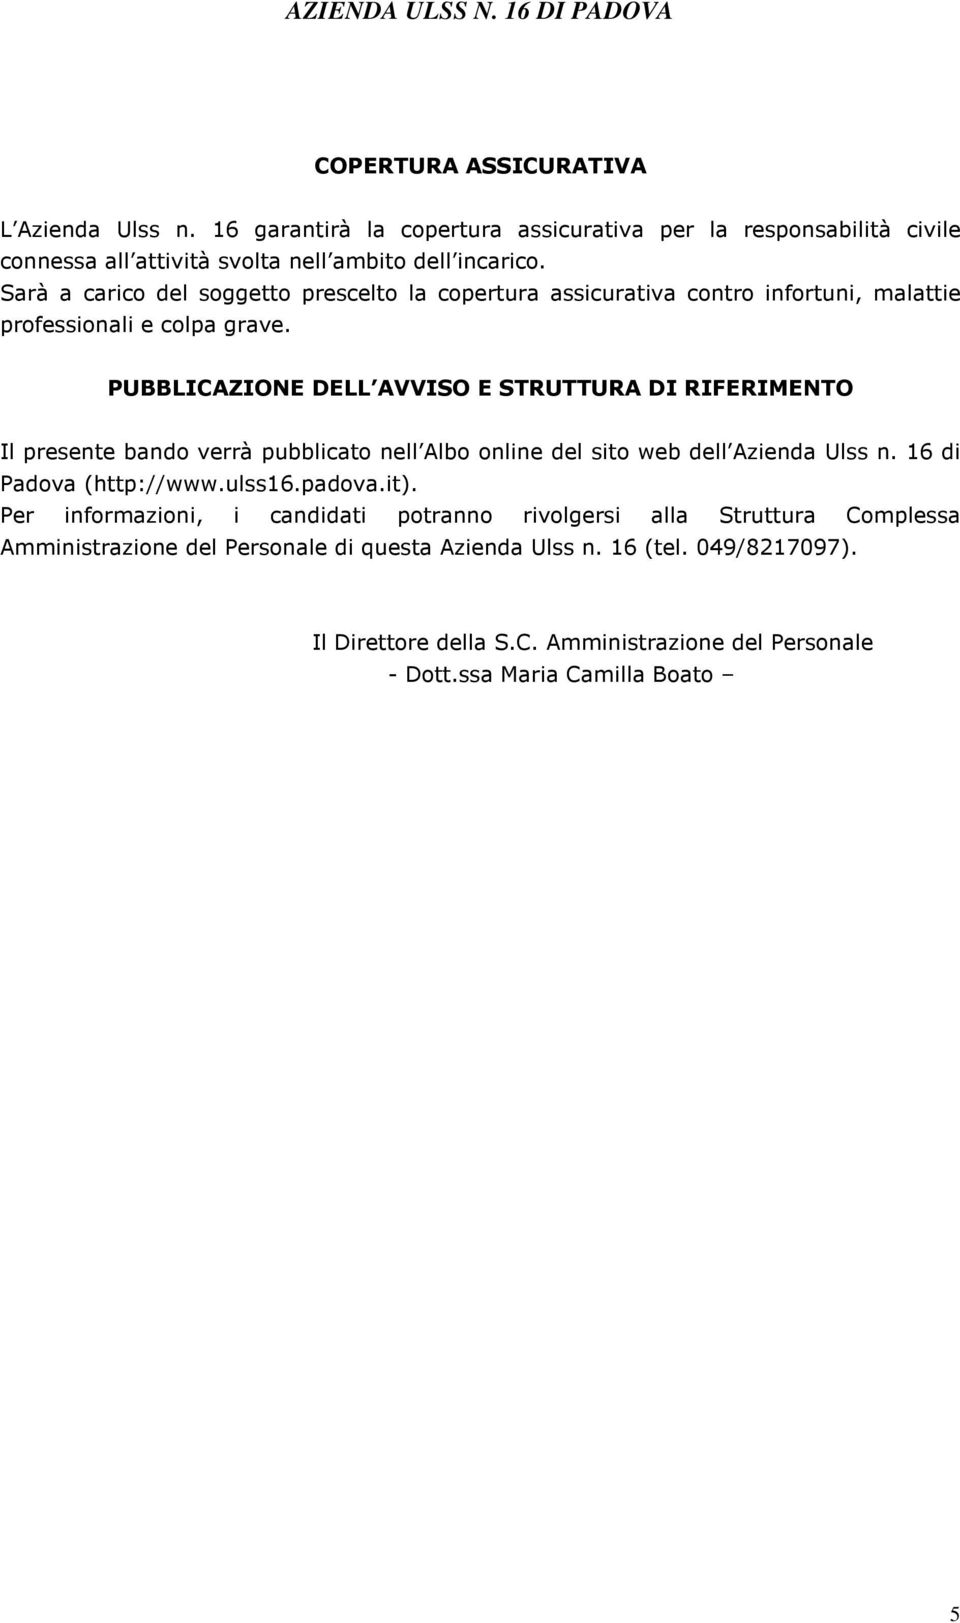 PUBBLICAZIONE DELL AVVISO E STRUTTURA DI RIFERIMENTO Il presente bando verrà pubblicato nell Albo online del sito web dell Azienda Ulss n. 16 di Padova (http://www.ulss16.